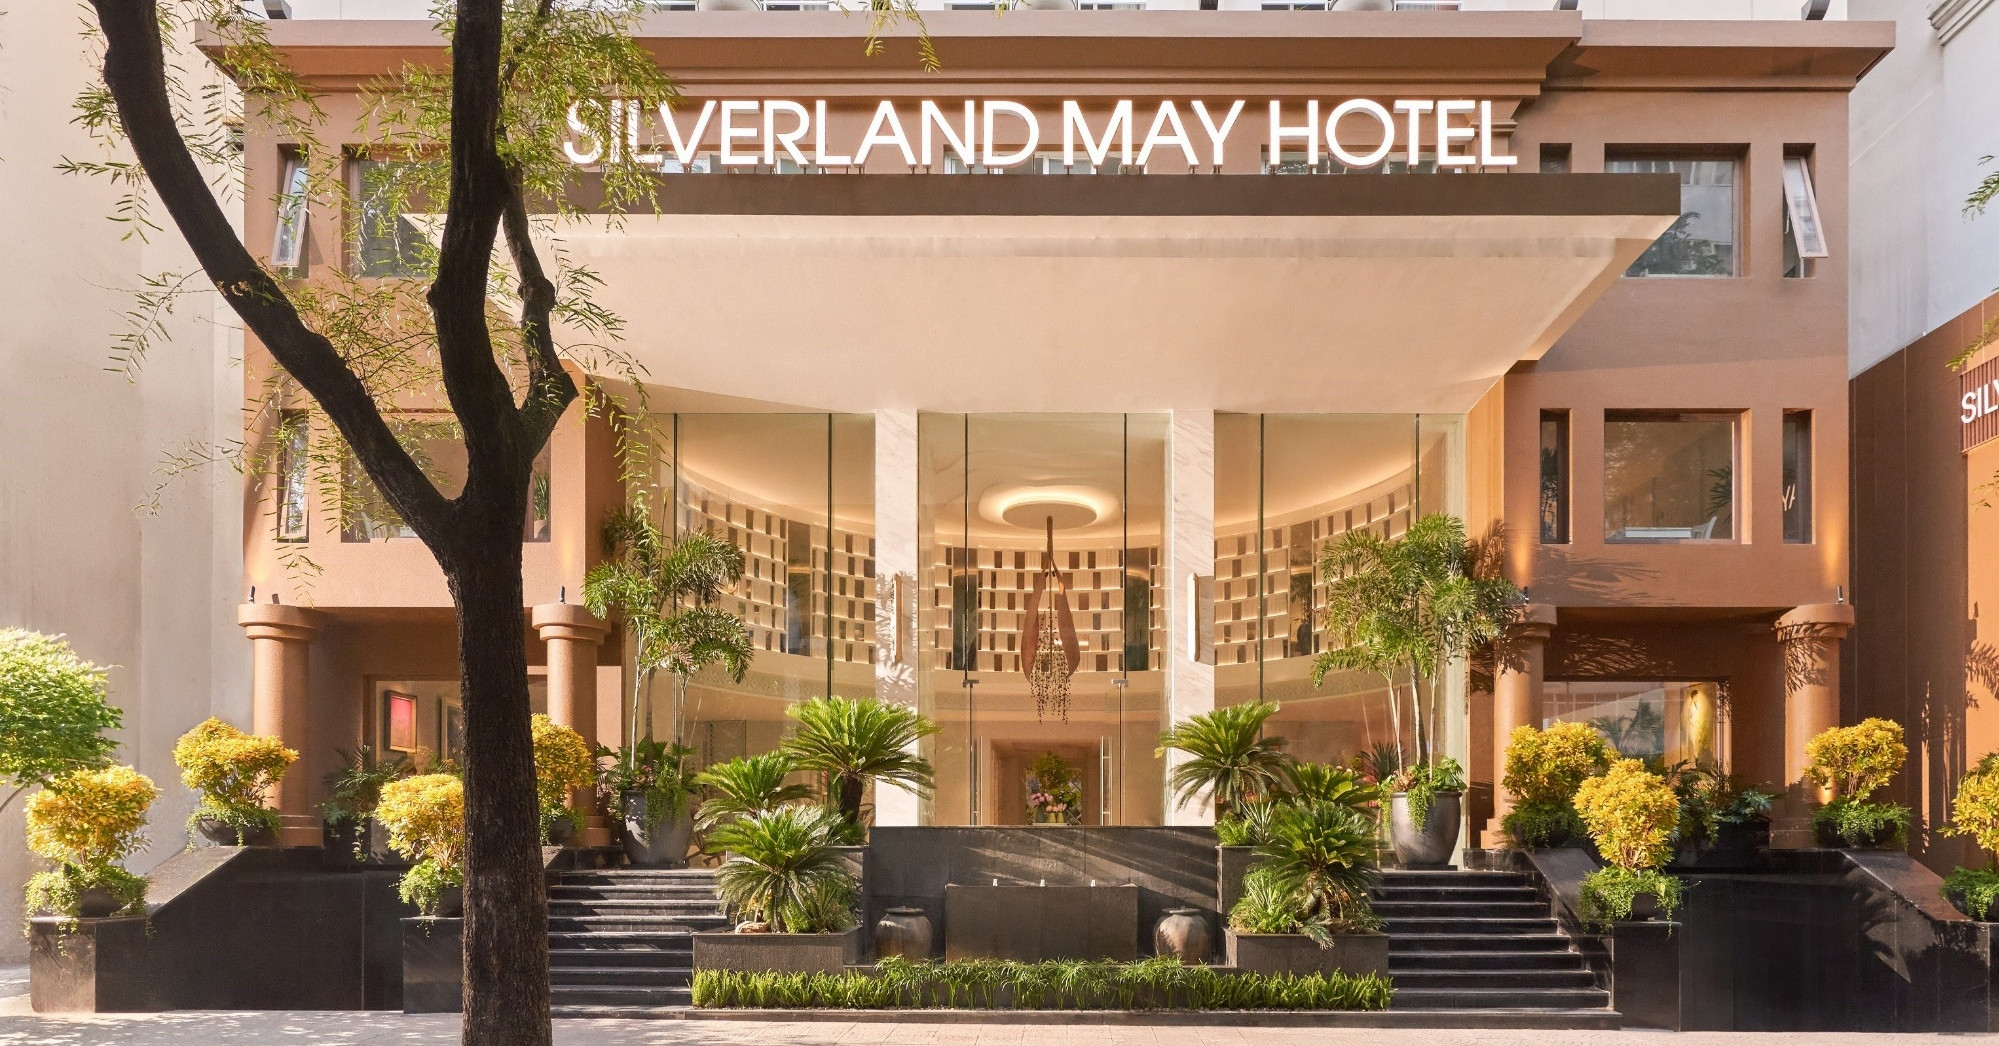 Silverland Mây Hotel - không gian yên bình giữa lòng thành phố 